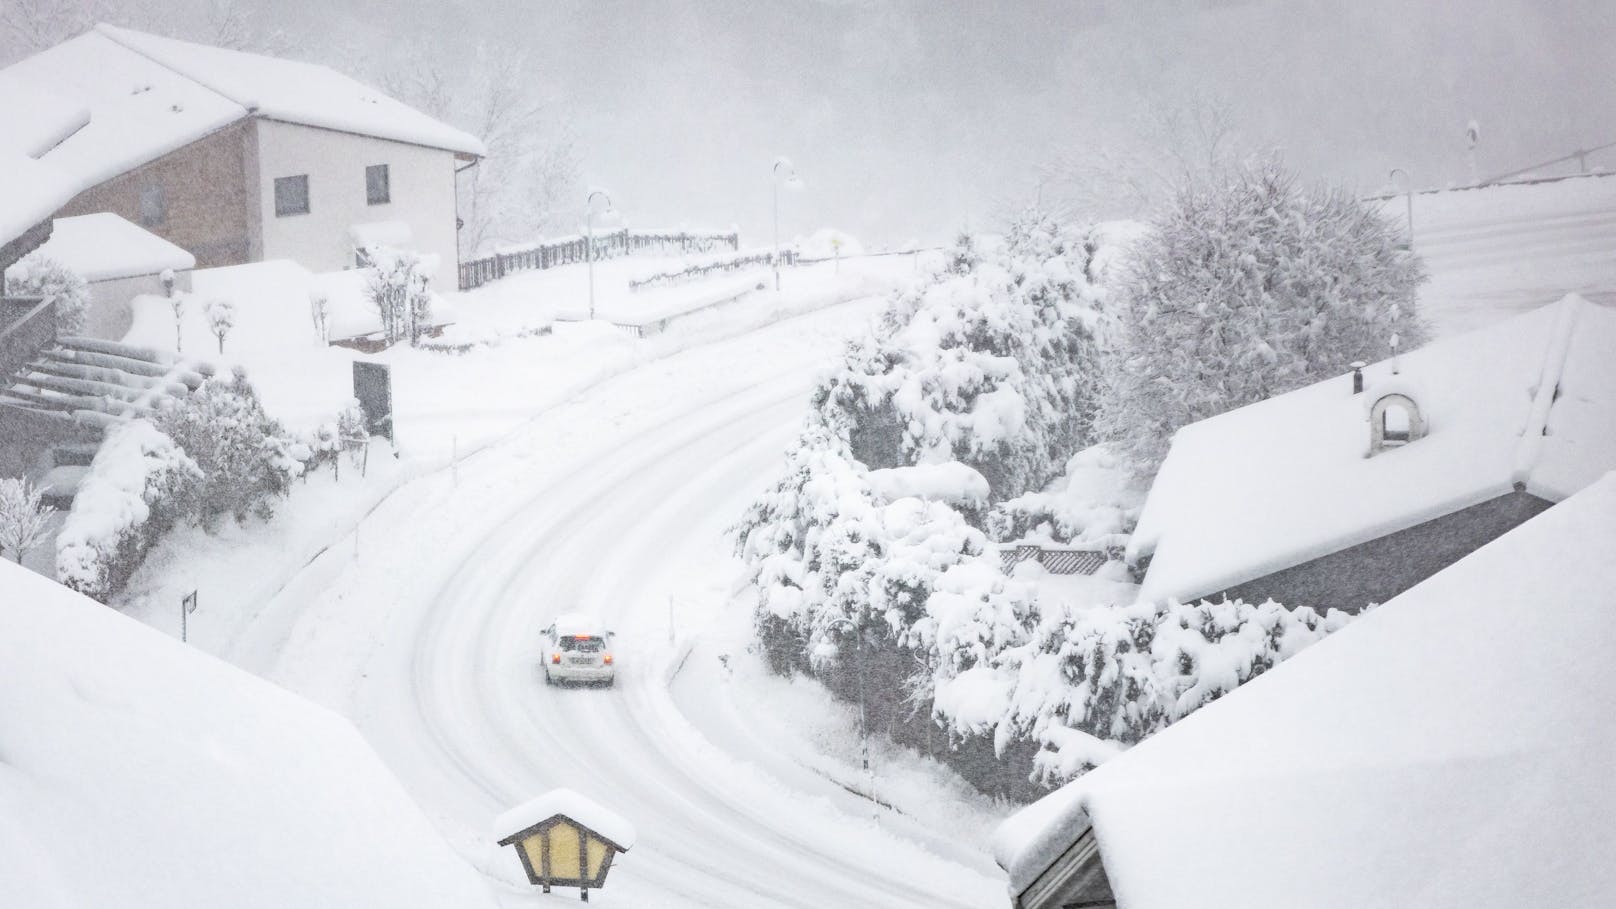 Schnee kommt nach Österreich – hier wird es jetzt weiß